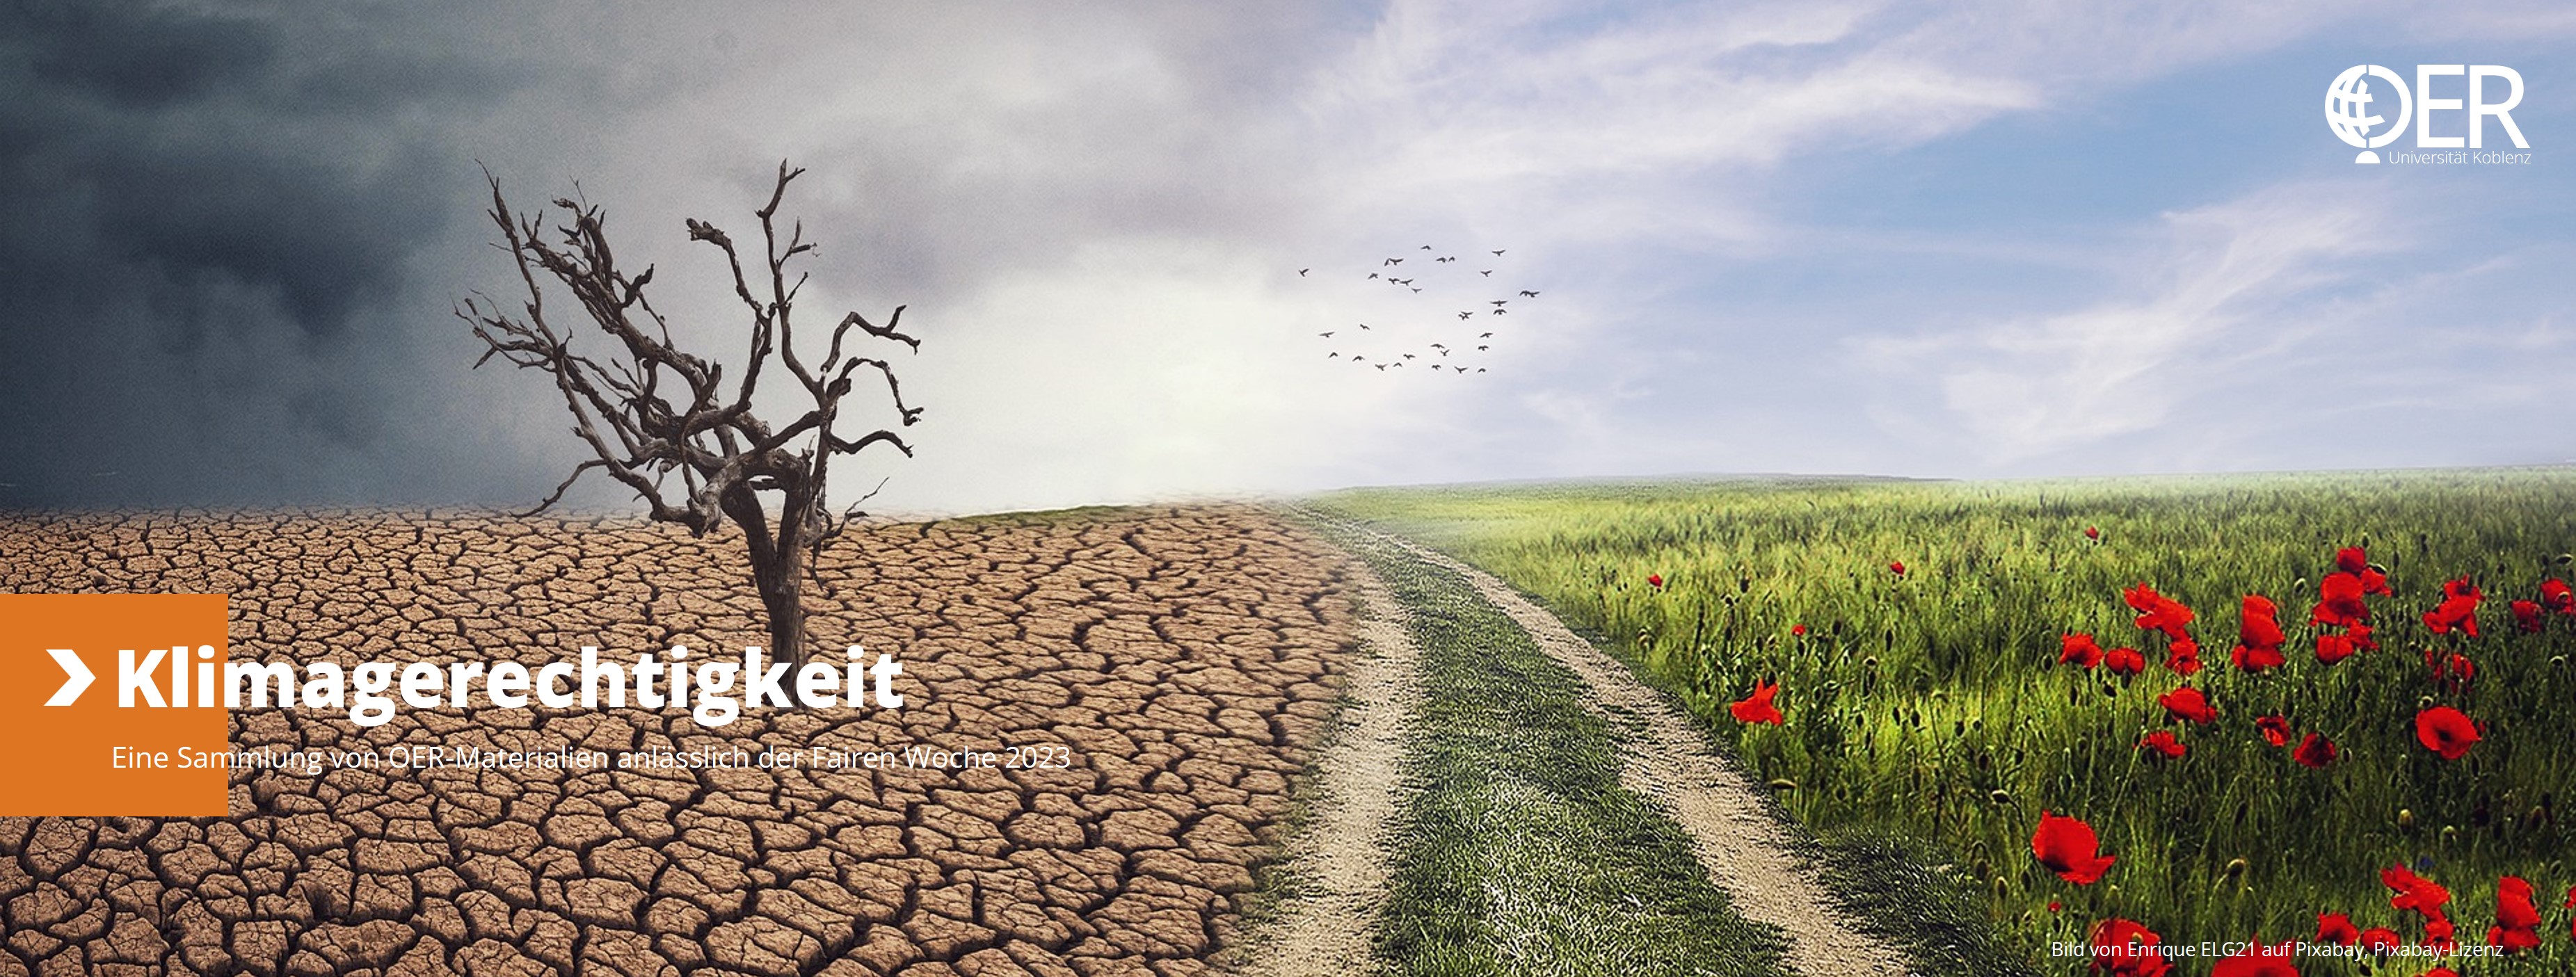 Header mit Logo OERLab der Universität Koblenz zum Thema "Klimagerechtigkeit und OER"